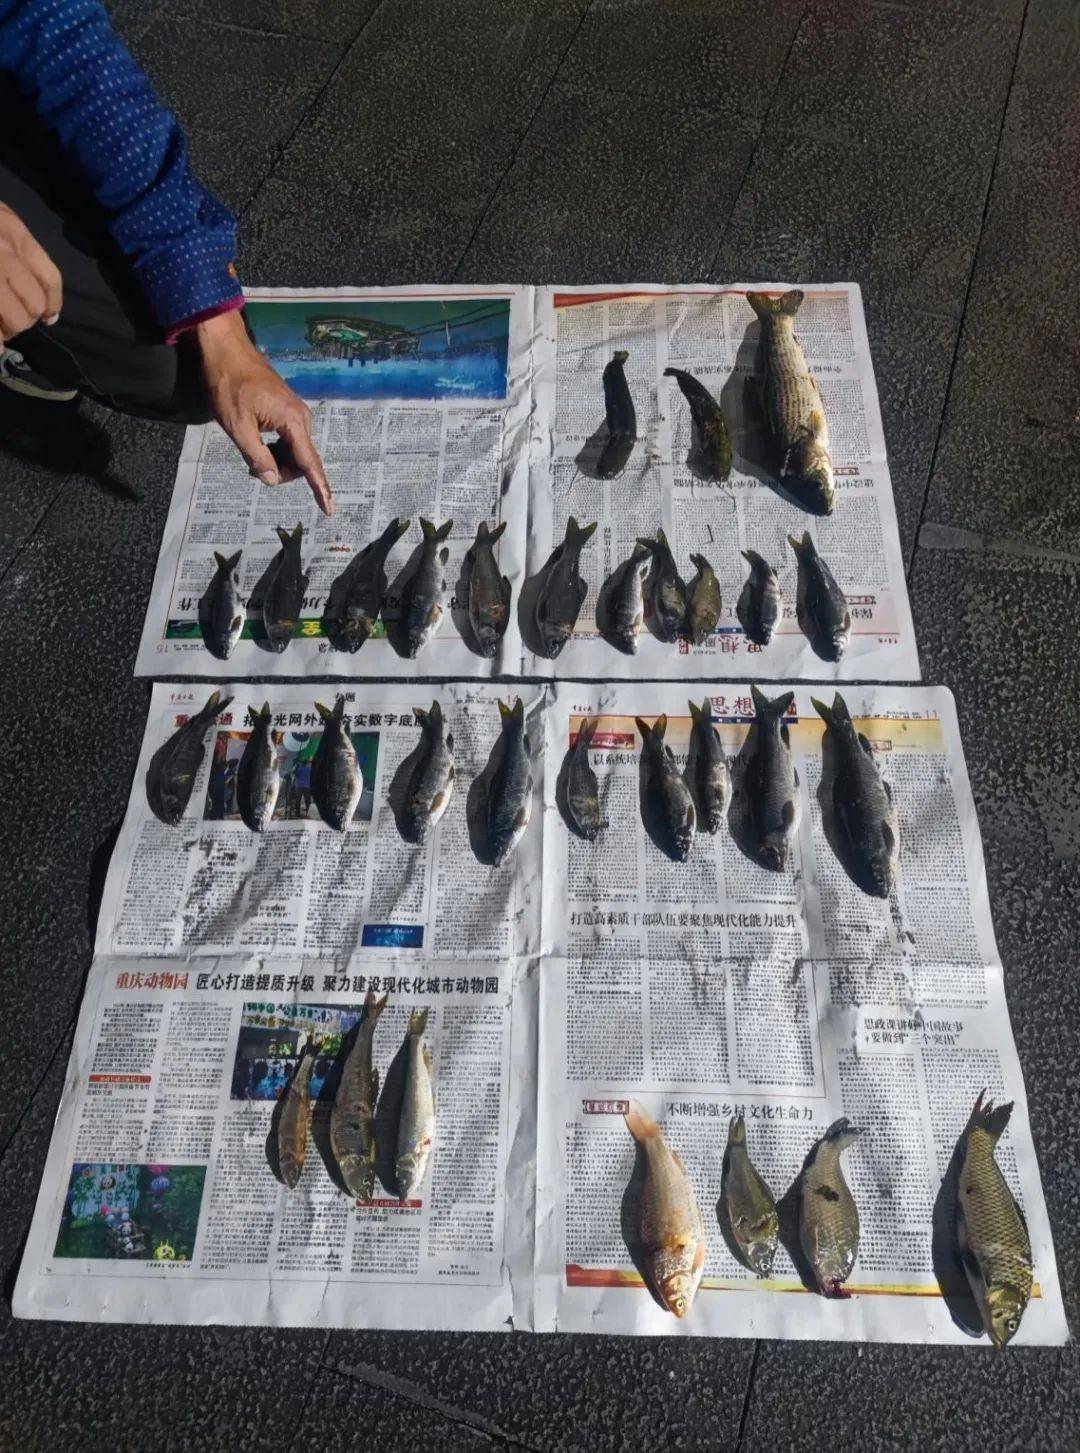 长江禁用渔具图片